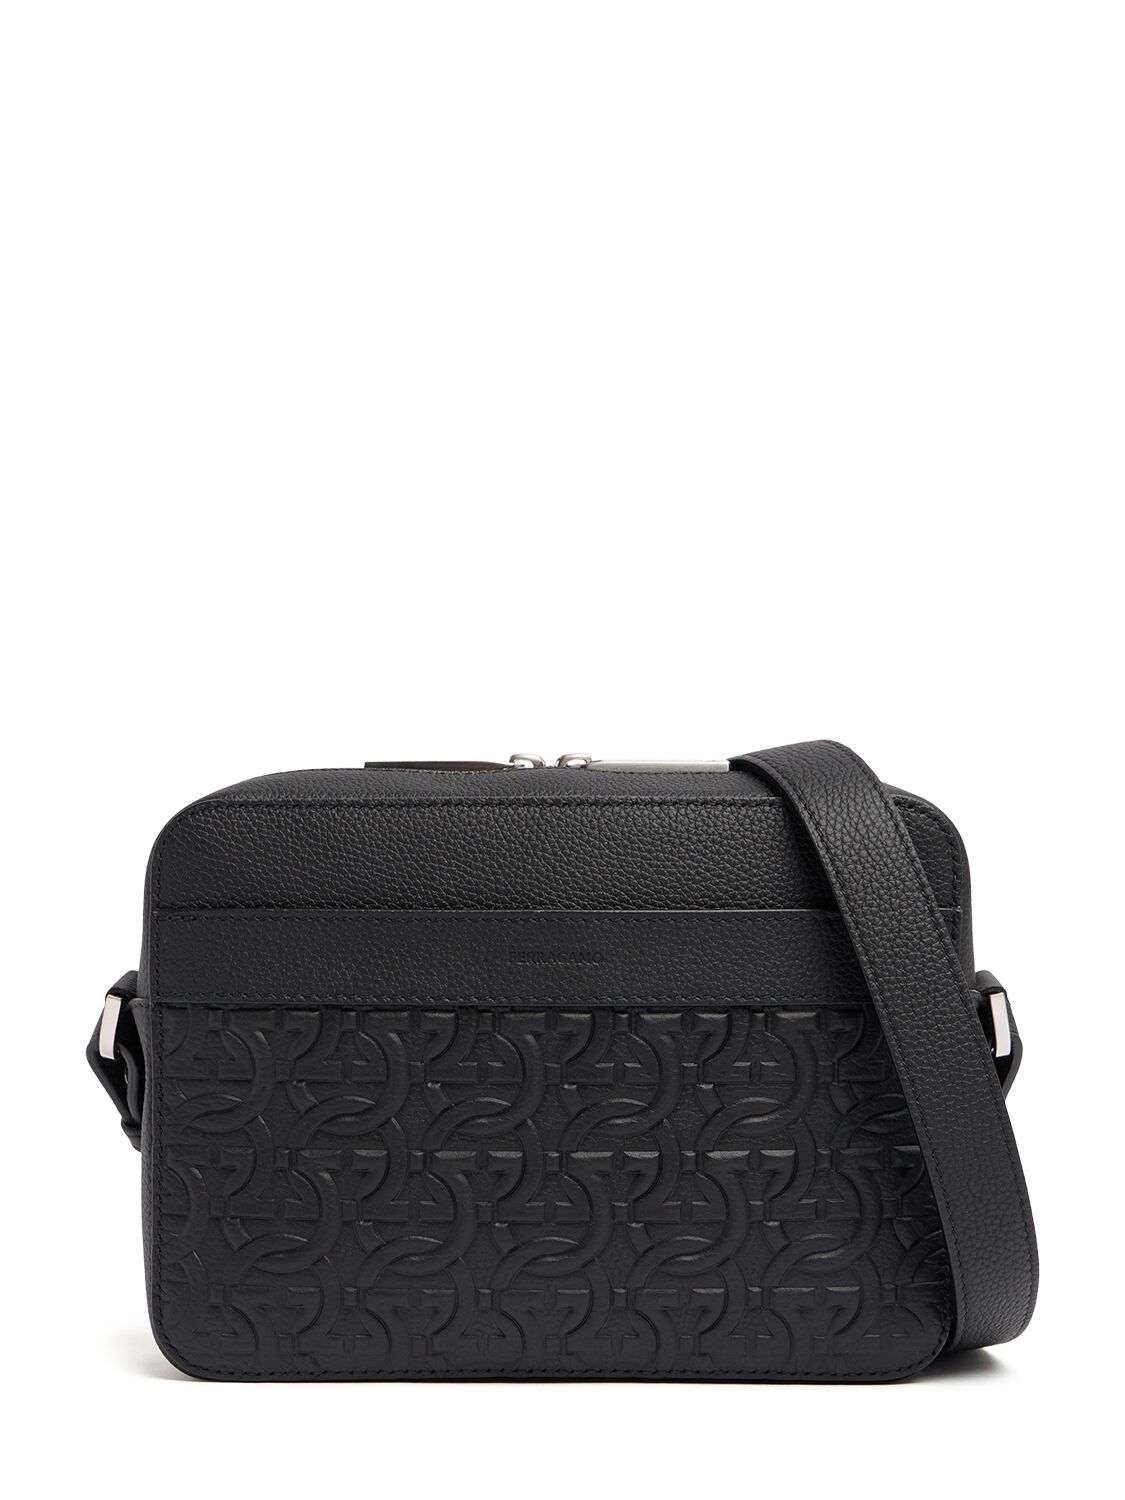 Ferragamo Logo Leather Shoulder Bag In Black